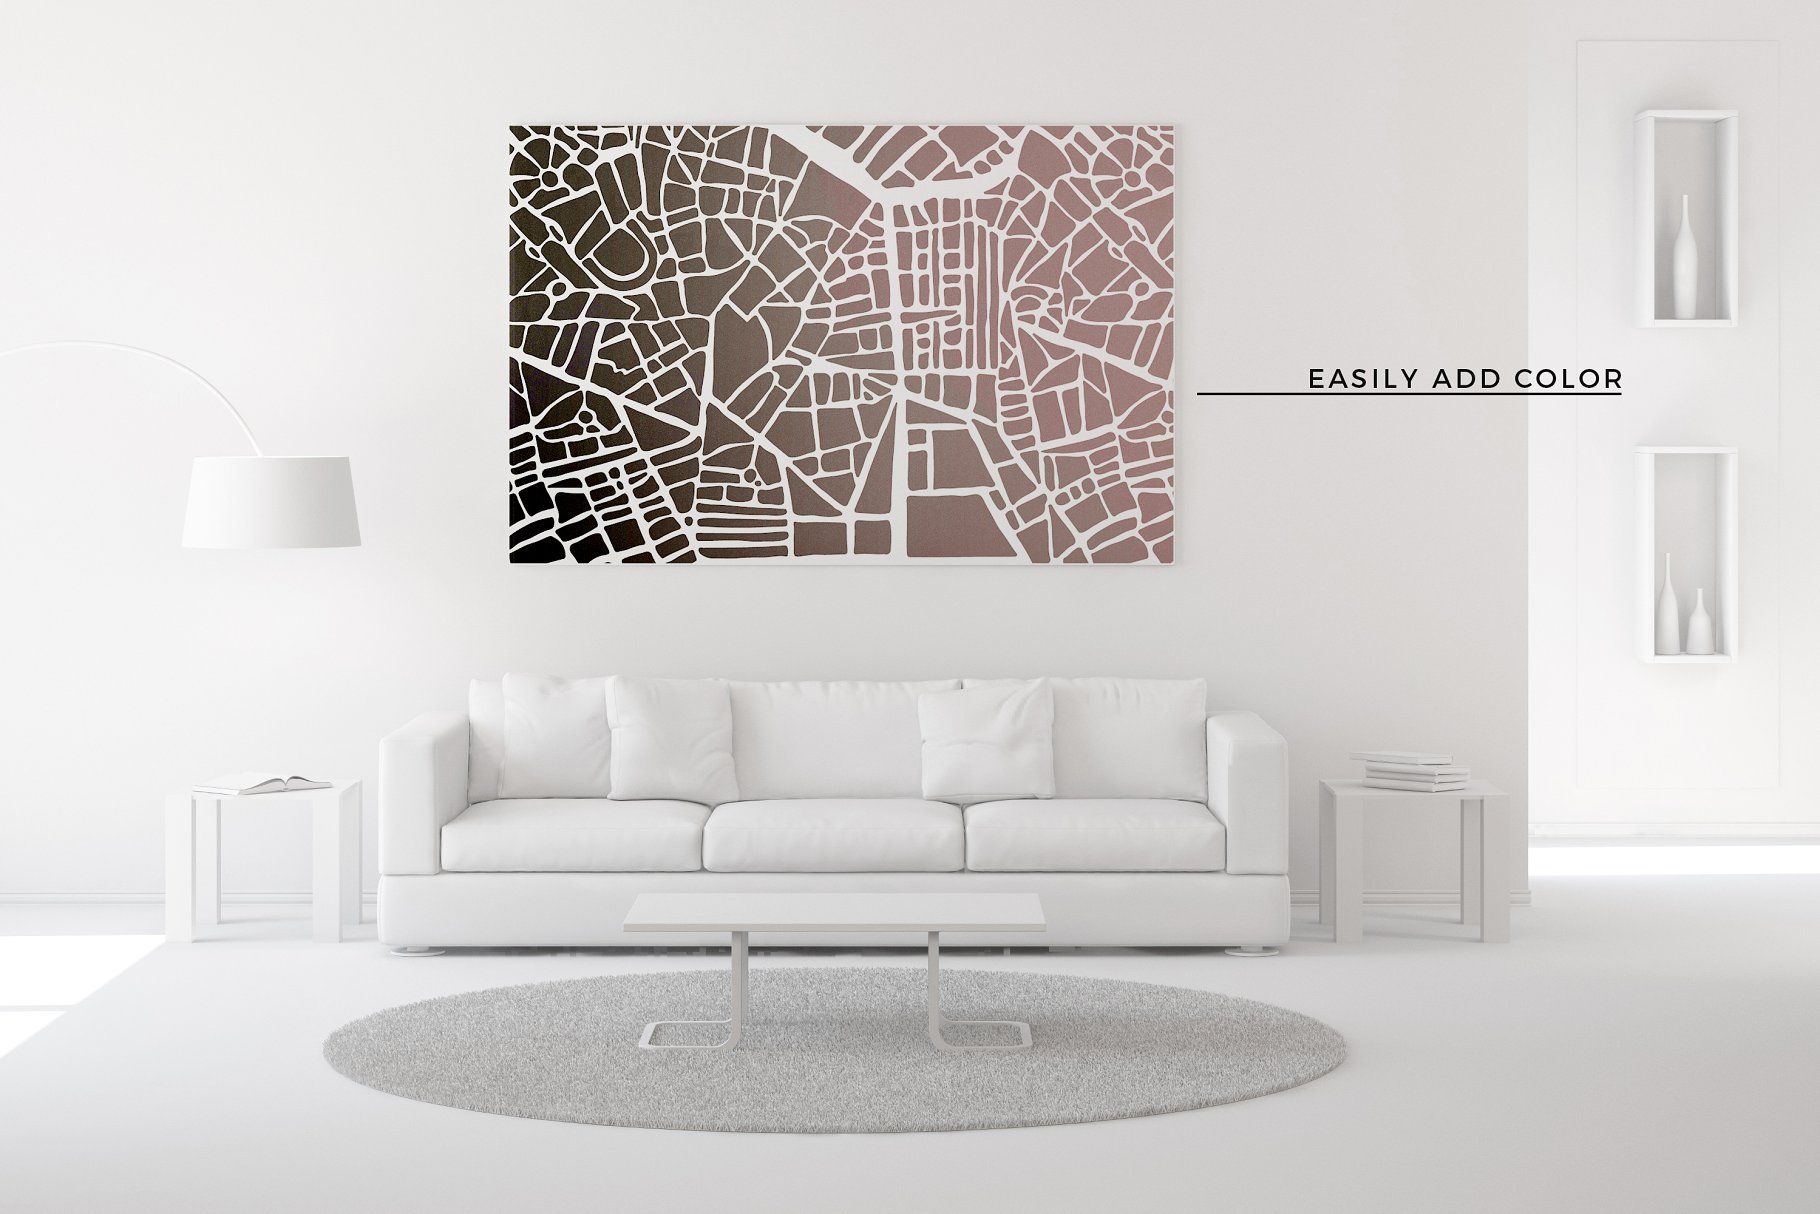 抽象城市地图纹理素材包 Abstract City Map Patterns插图(4)